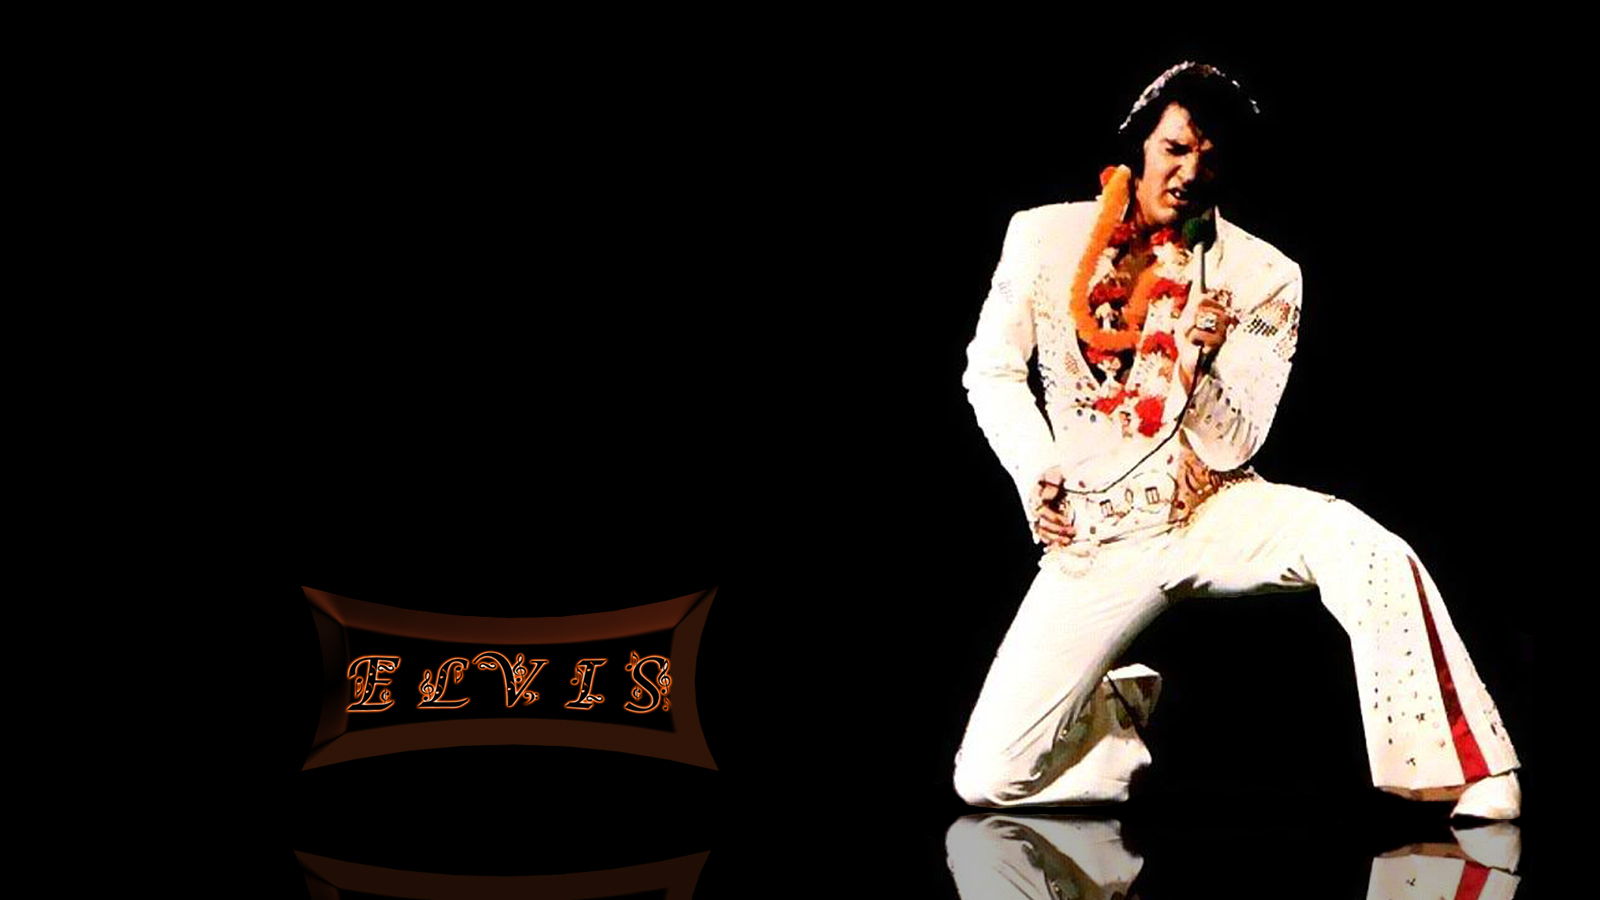 Elvis Presley Wallpaper Desktop Image Amp Pictures Becuo